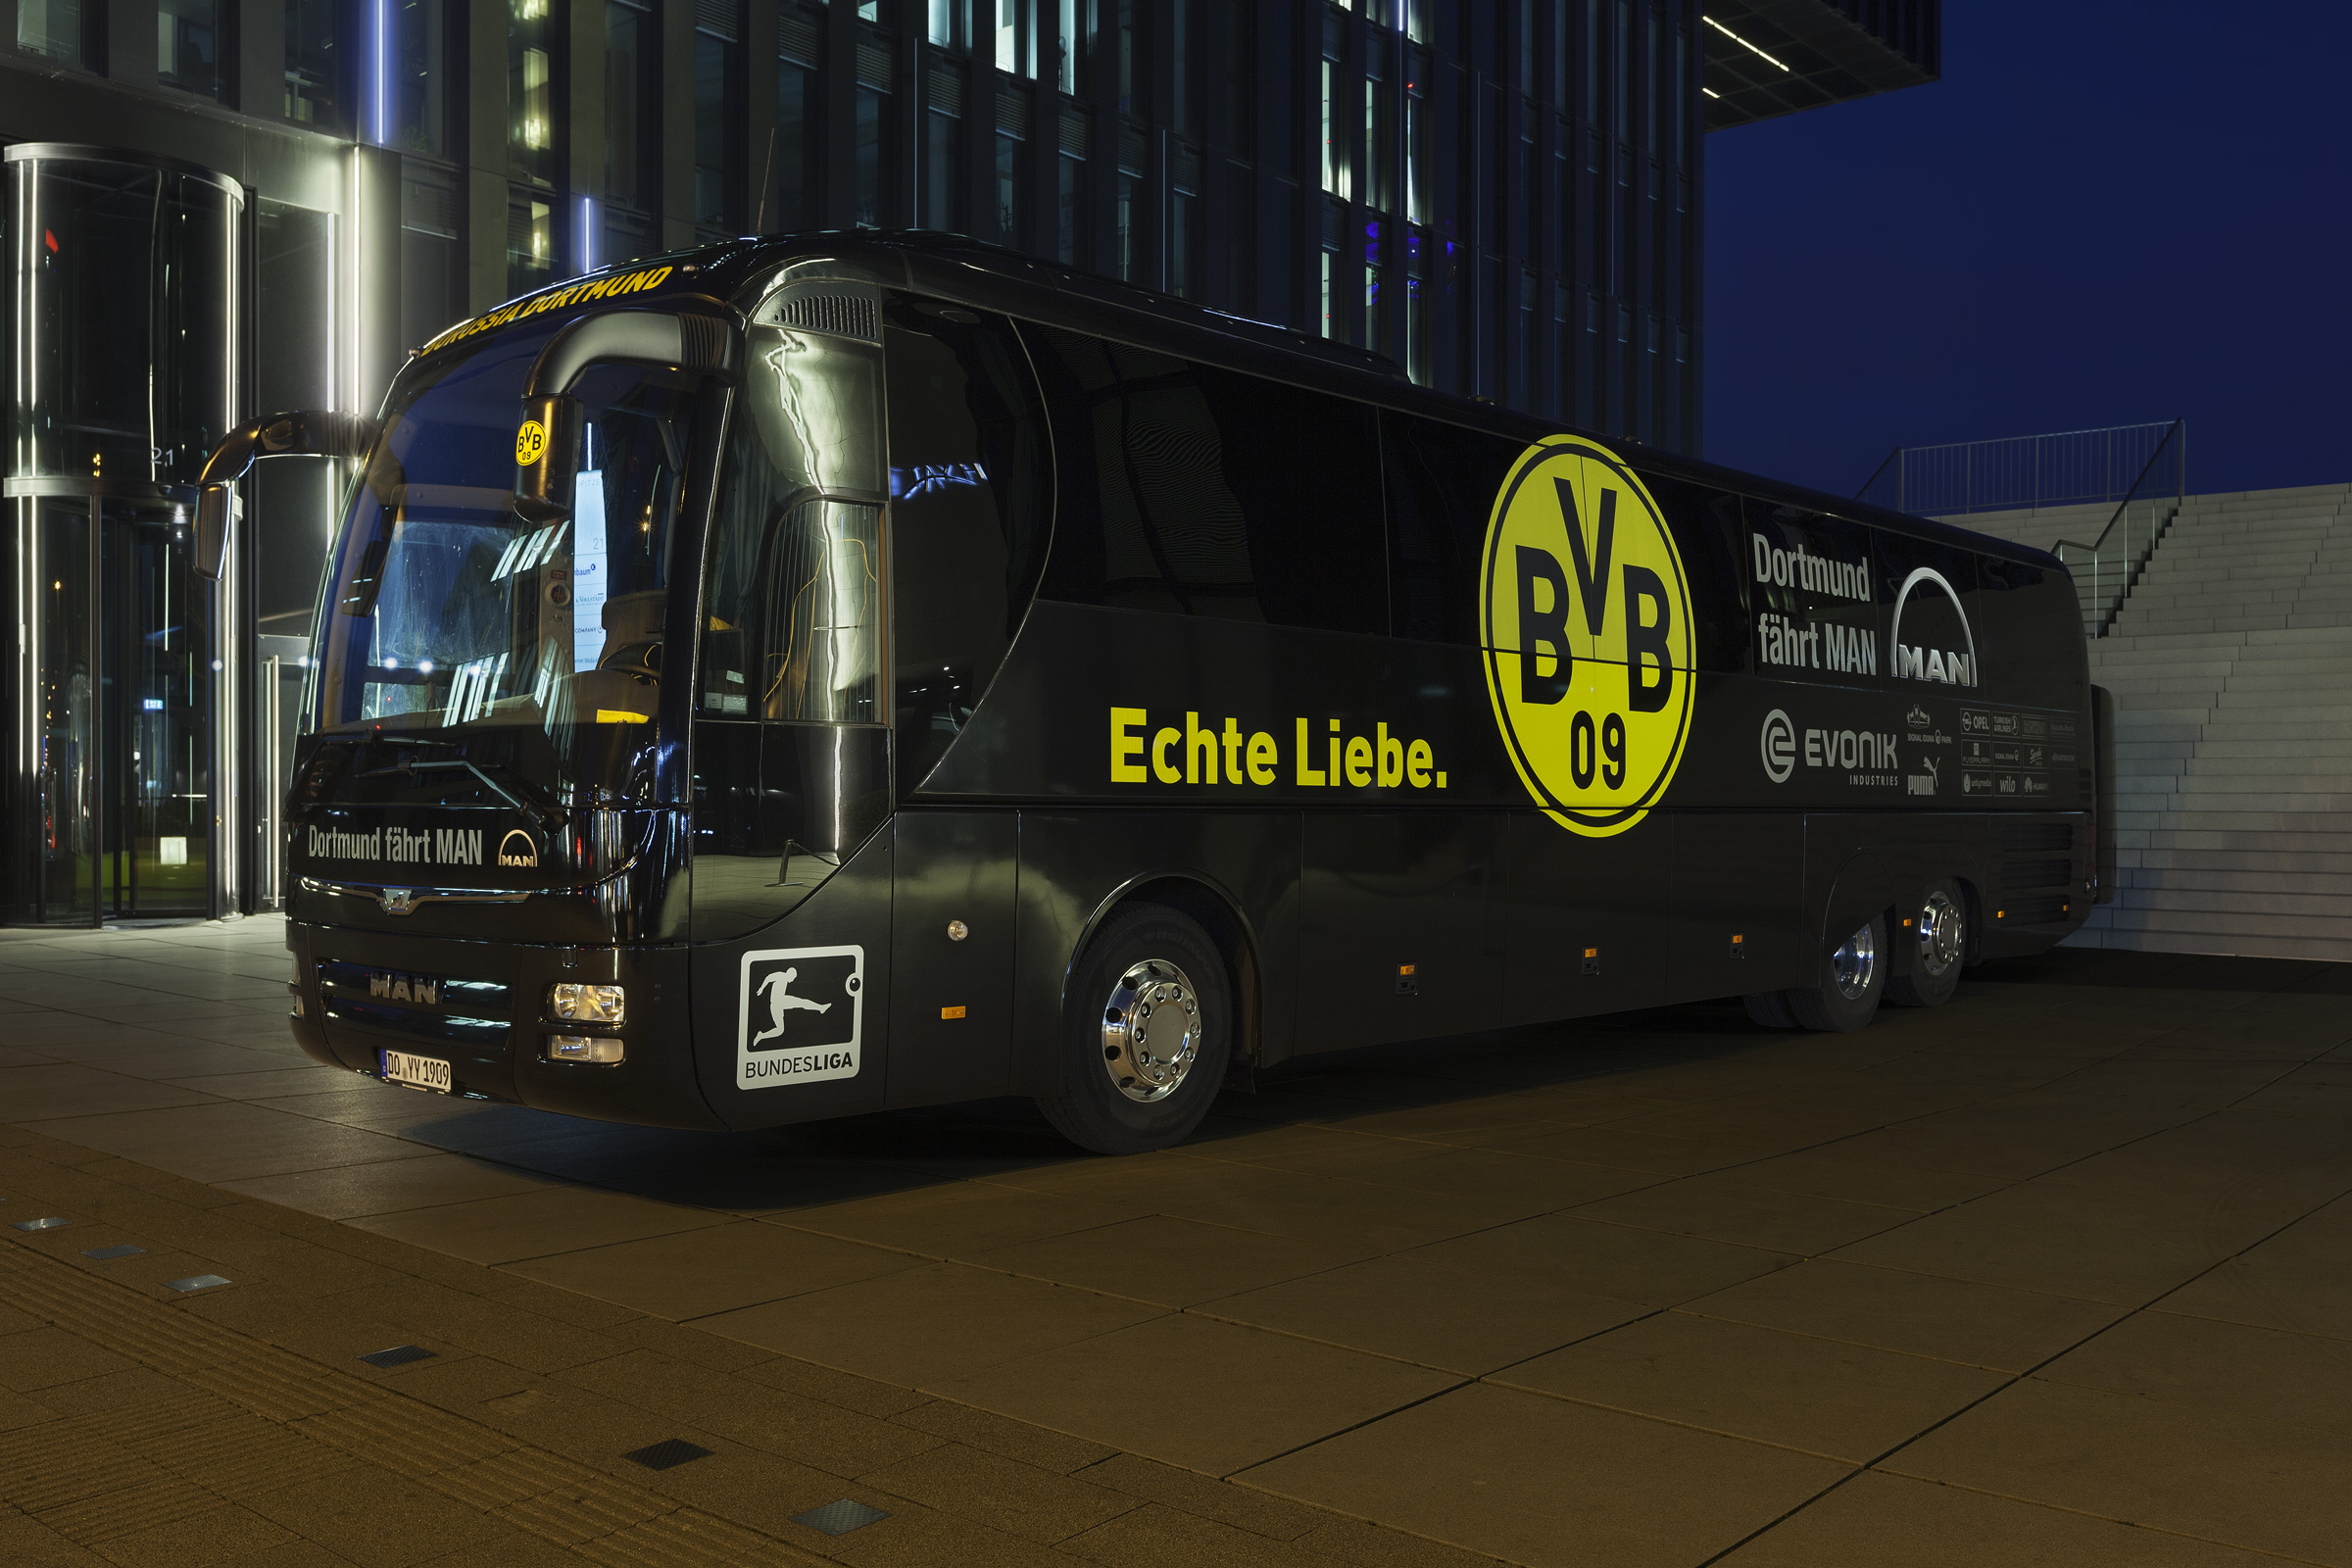 Echte Liebe – Mannschaftsbus Borussia Dortmund in Düsseldorf.jpg